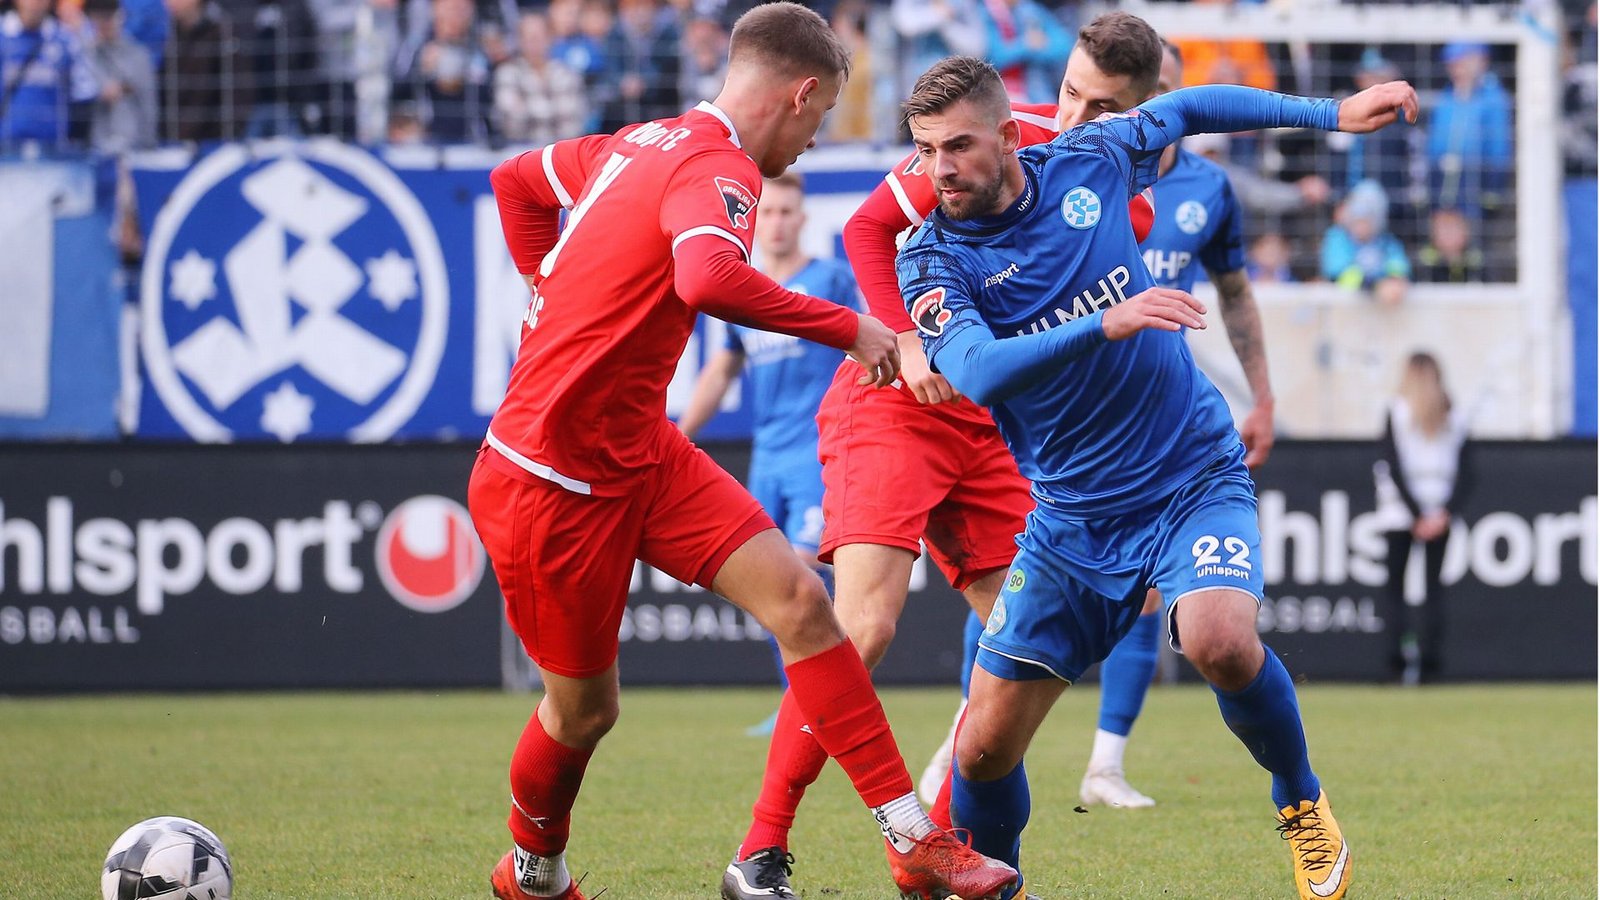 David Braig und die Stuttgarter Kickers wollen gegen den FC Holzhausen den nächsten Sieg.Foto: Pressefoto Baumann/Julia Rahn